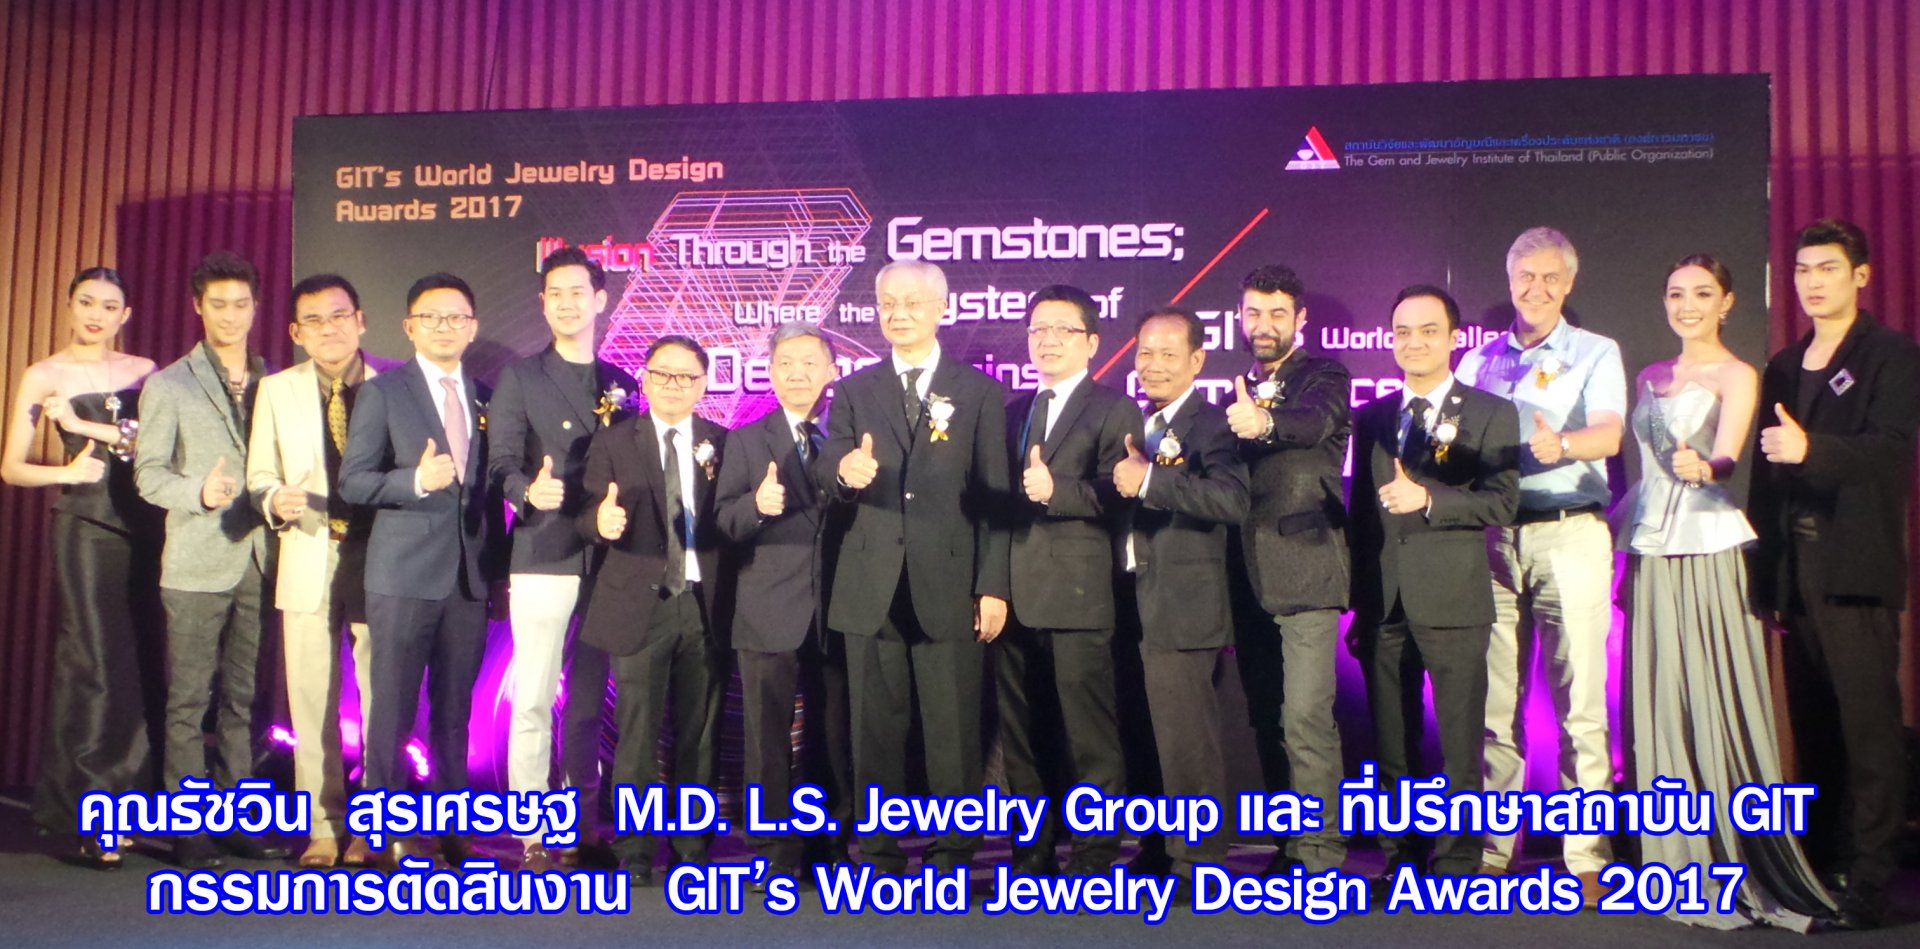 คุณธัชวิน สุรเศรษฐ M.D. L.S. Jewelry Group และ ที่ปรึกษาสถาบัน GIT รับเชิญเป็นกรรมการตัดสินงาน GIT’s World Jewelry Design Awards 2017 ในนิตยสาร GIT Gems & Jewelry เดือน มิถุนายน 2017